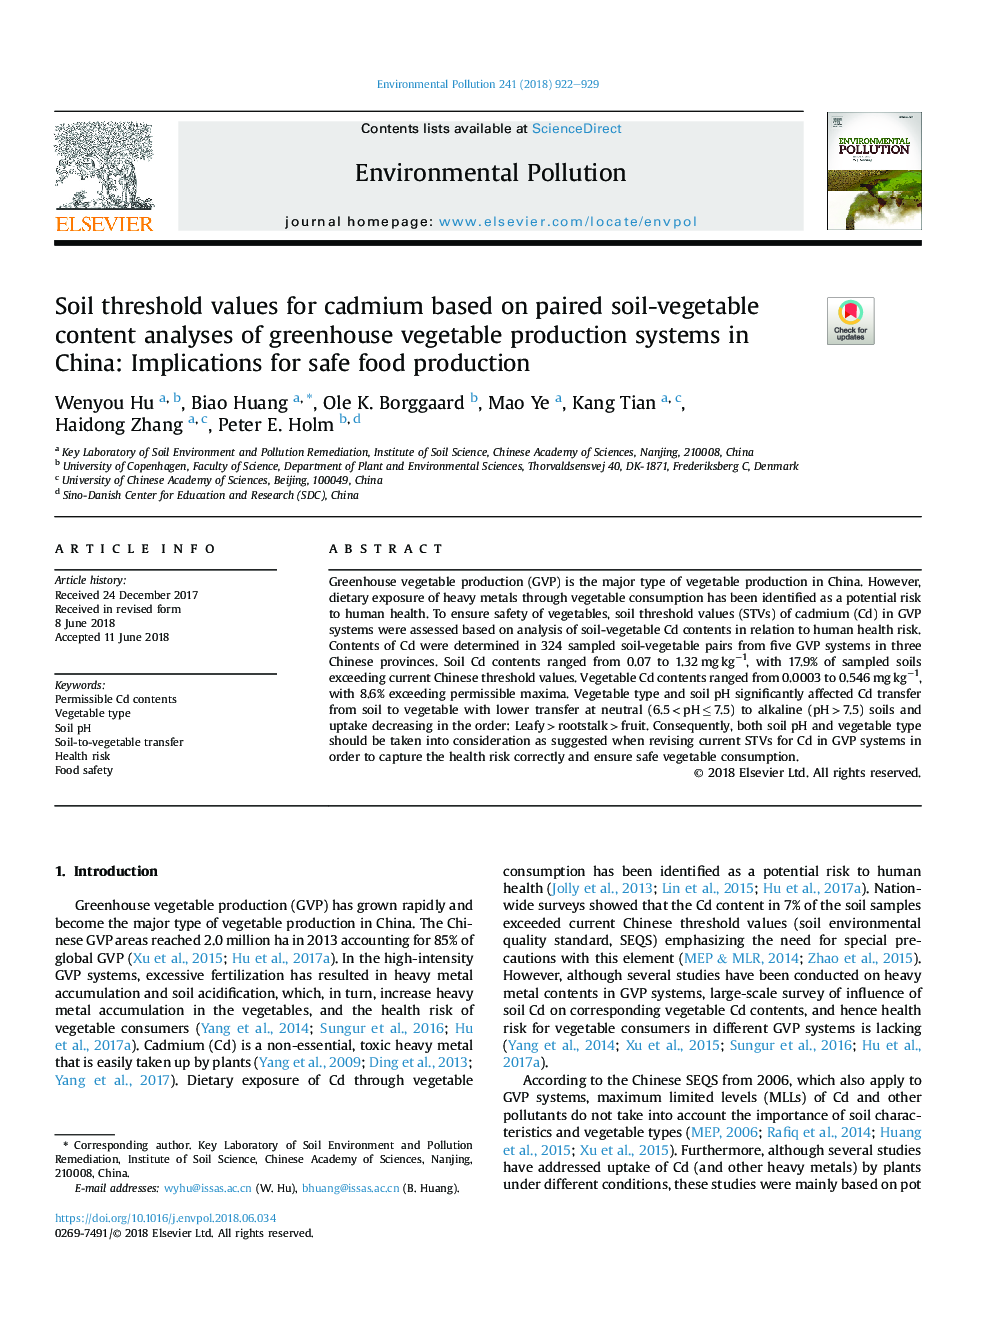 مقادیر آستانه خاک برای کادمیوم براساس تجزیه و تحلیل محتوی خاک خاکی در سیستم تولید سبزیجات در چین: پیامدهای تولید غذای سالم 